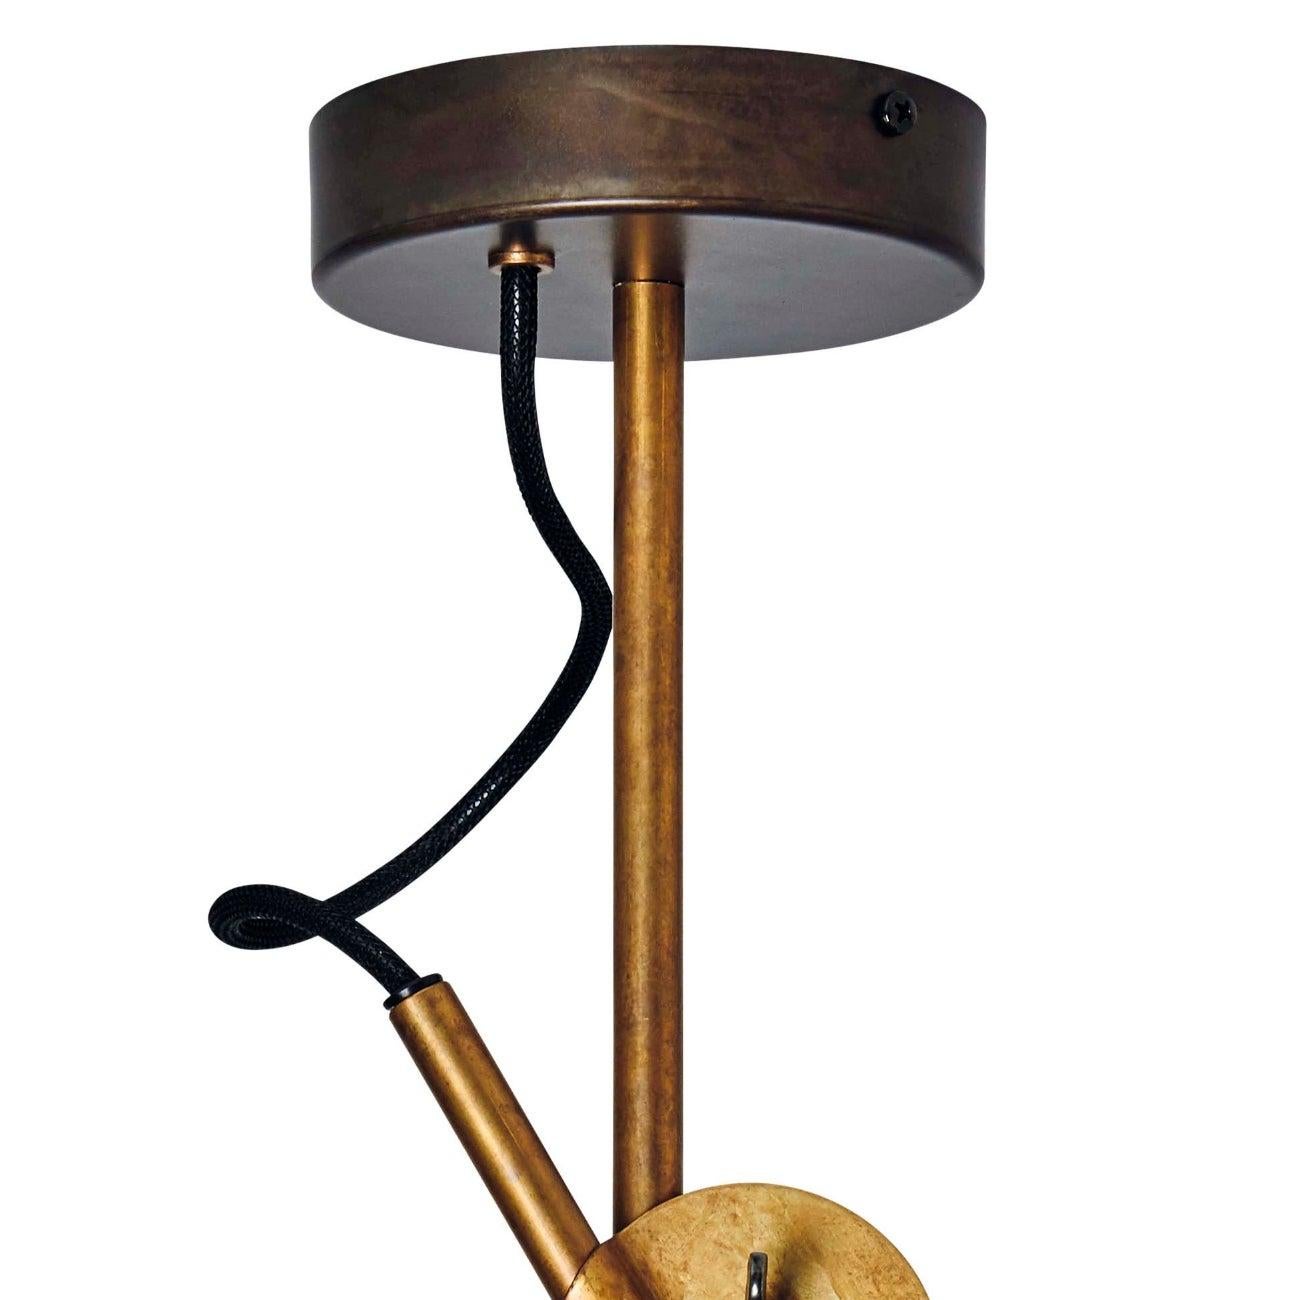 Johan Carpner Stav Spot 2 Raw Brass Ceiling Lamp by Konsthantverk 2